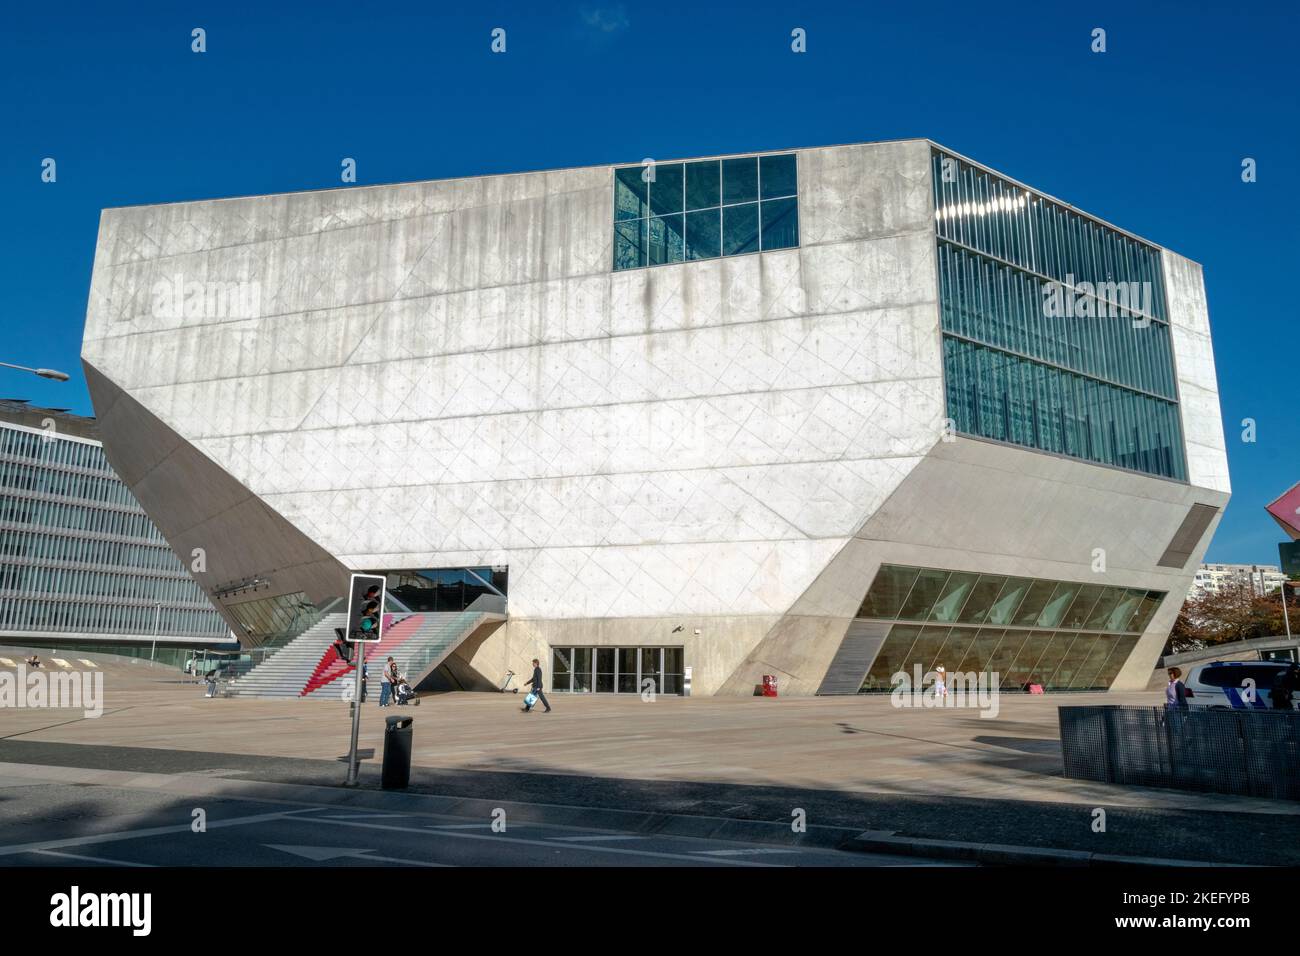 Salle de concert Casa da Música à Porto, Portugal. Il a été conçu par l'architecte Rem Koolhaas et a ouvert ses portes en 2005. Polygone de la salle de concert Casa da Música Banque D'Images